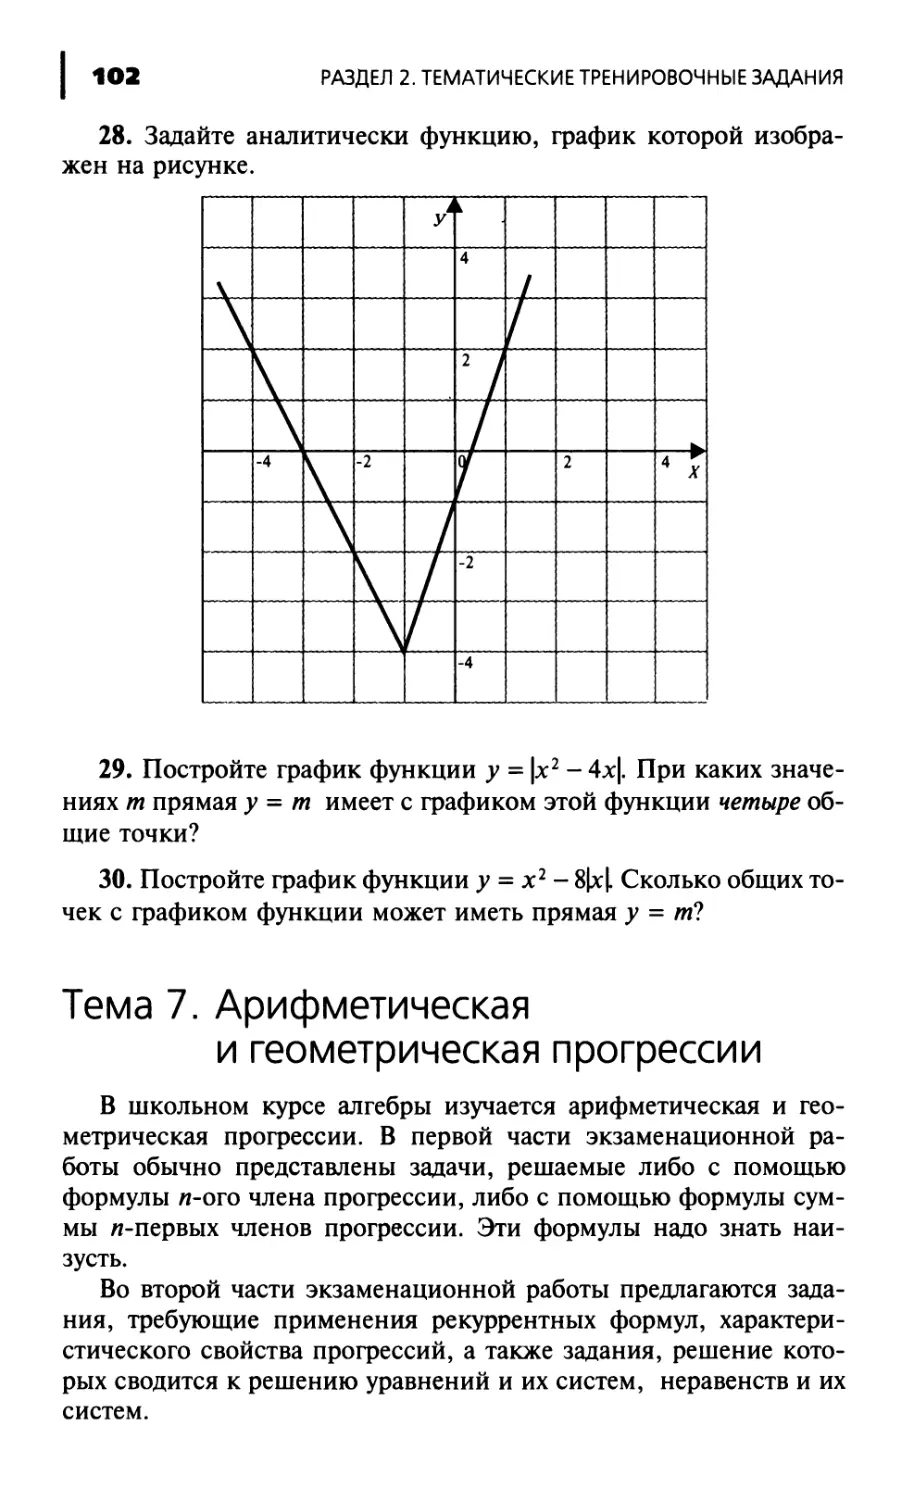 Тема 7. Арифметическая и геометрическая прогрессии